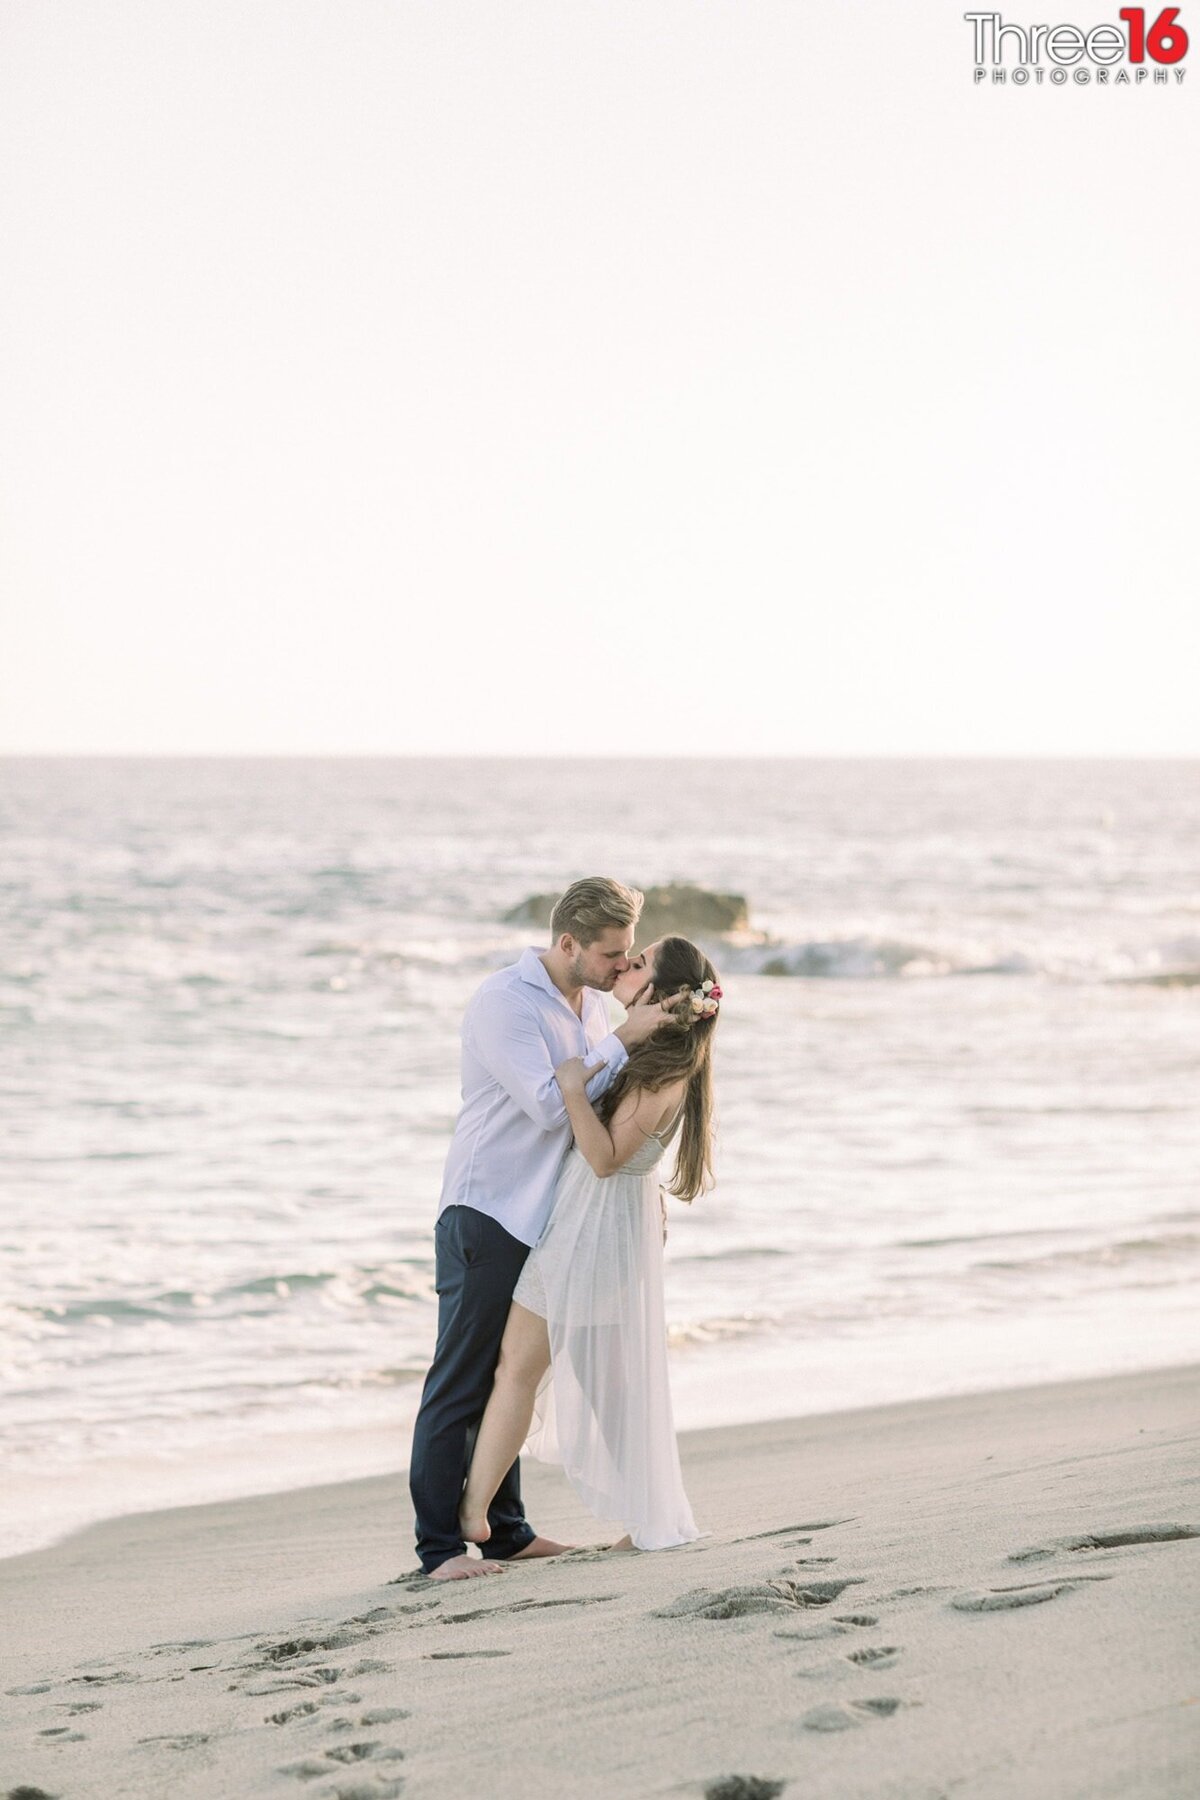 Newly eloped couple share a kiss on the sandy beach near the ocean